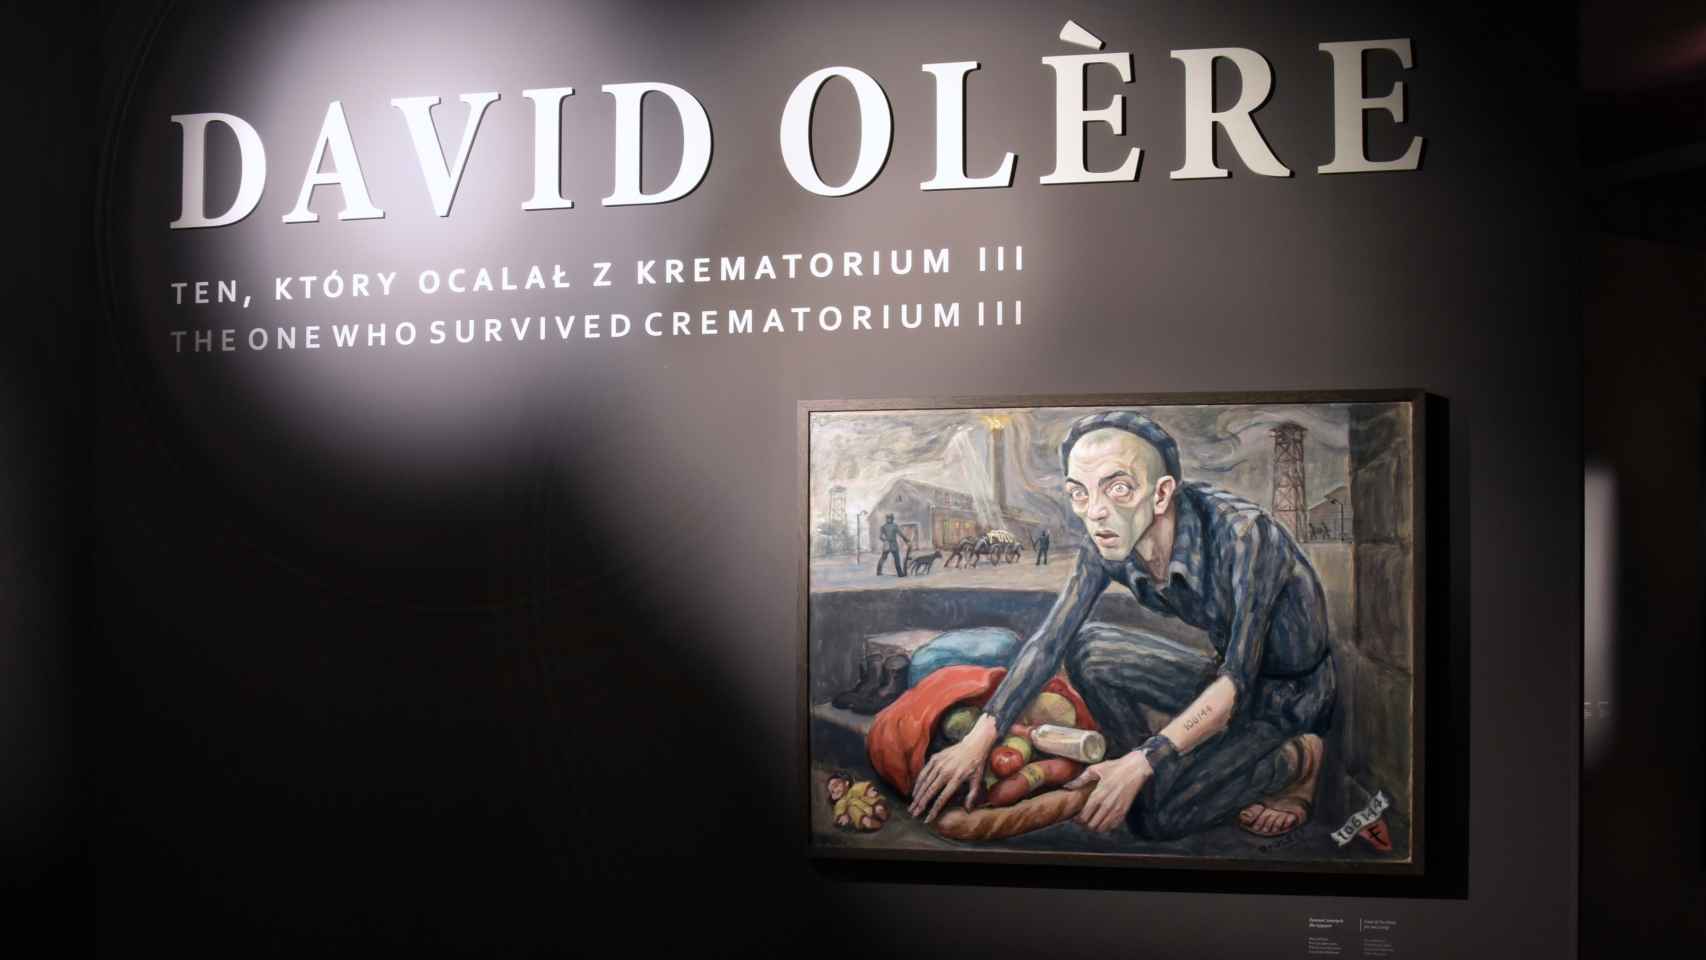 David Olère, el sonderkommando que pintó los horrores del Holocausto